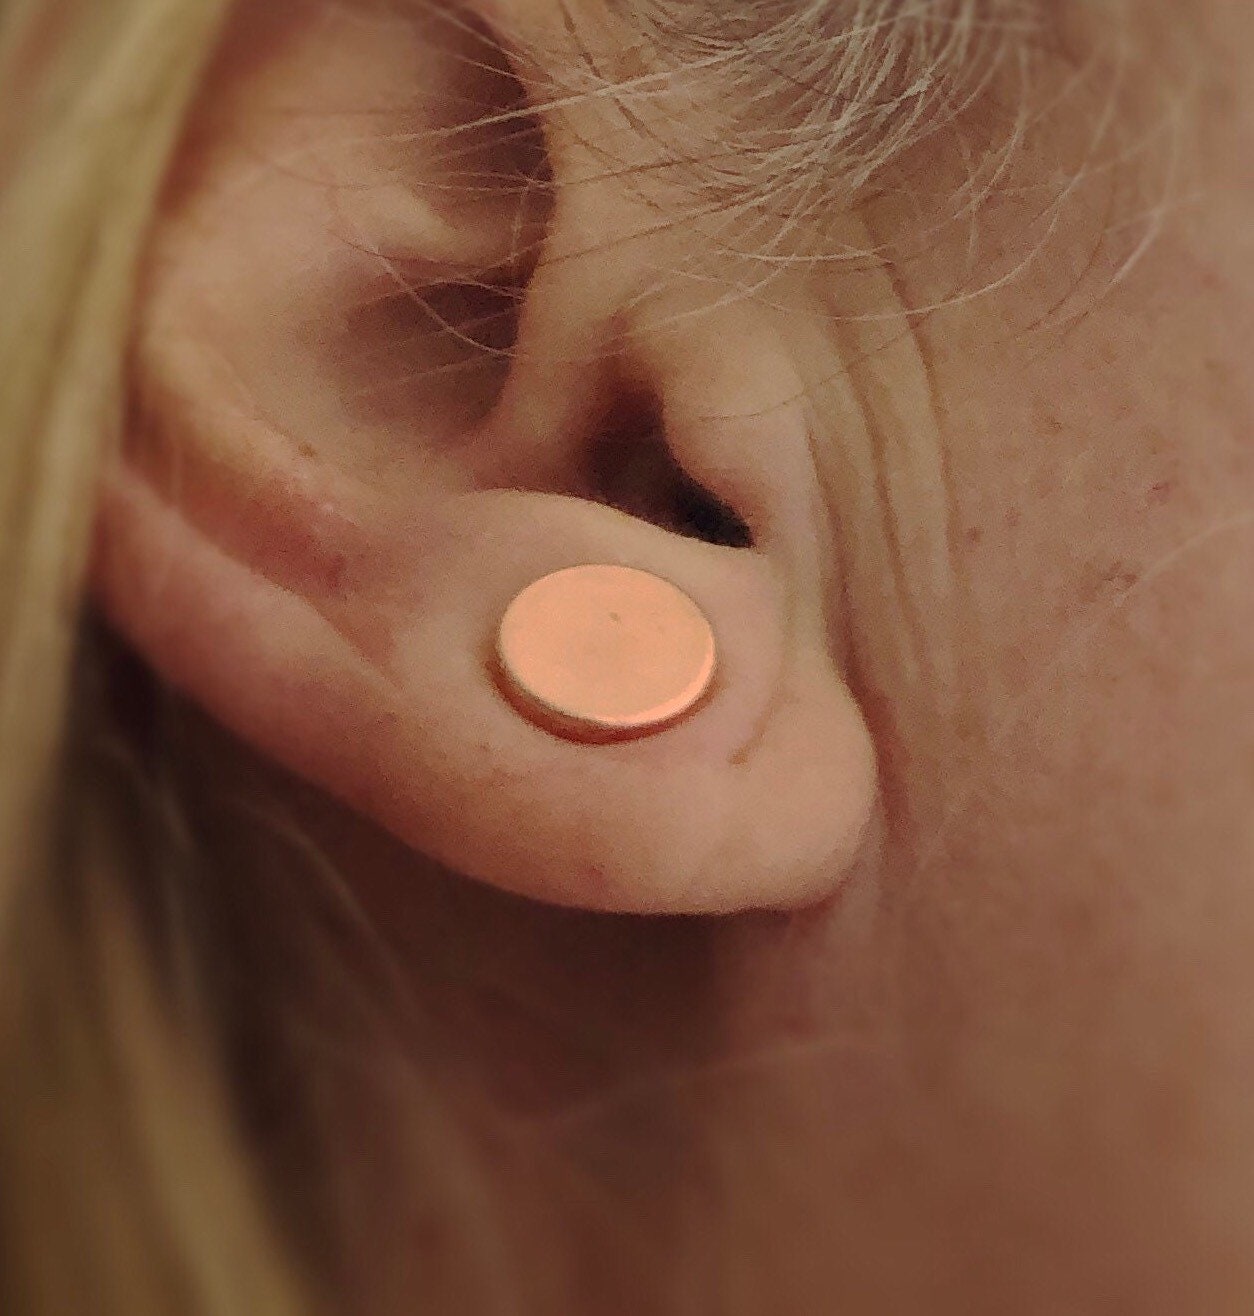 Gold keloid pressure earrings • Magnetic earrings clip on ear